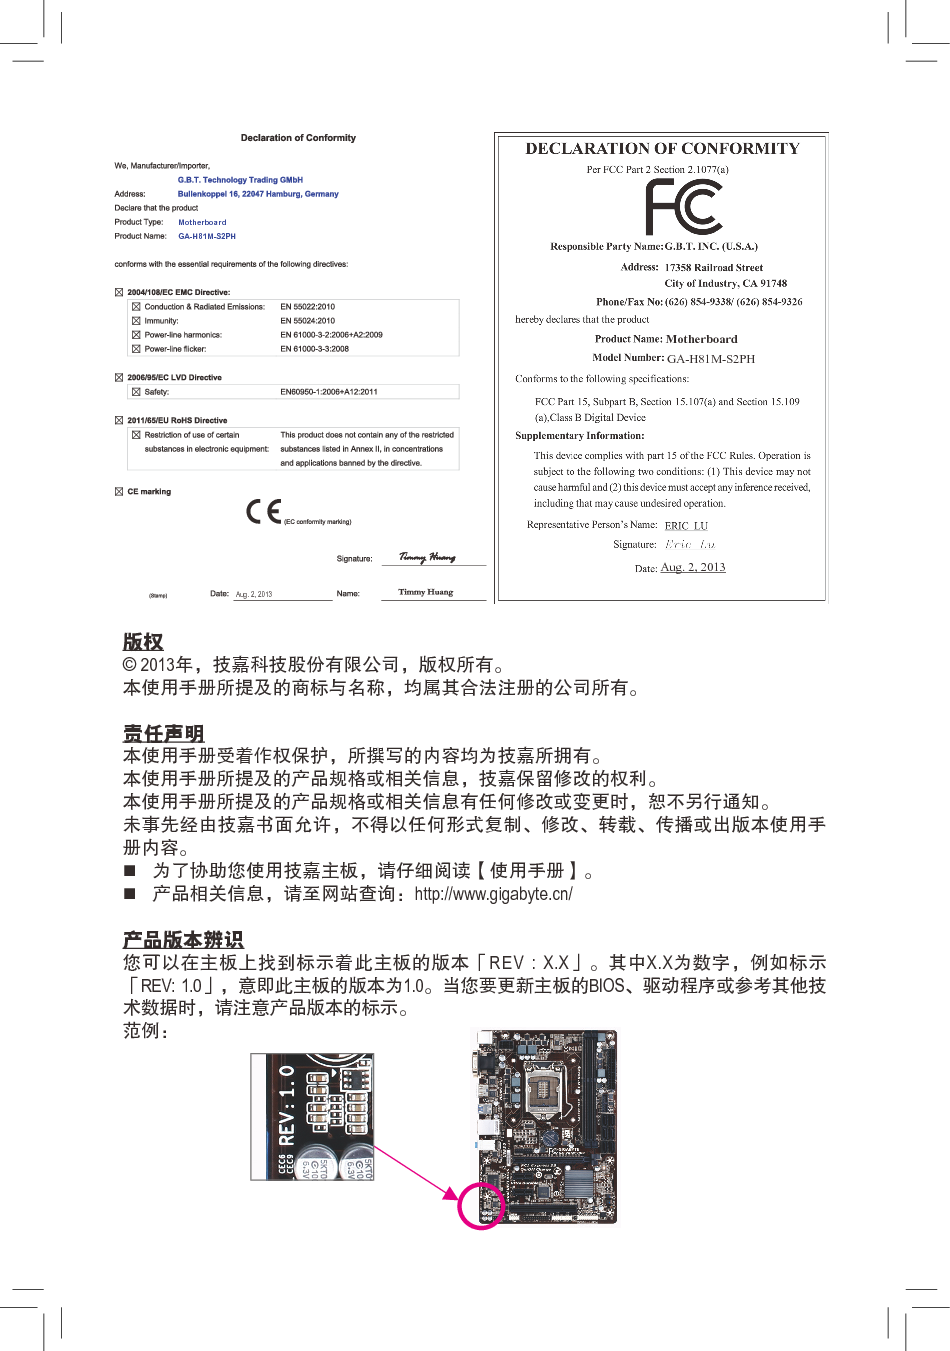 技嘉 Gigabyte GA-H81M-S2PH 1001版 使用手册 第1页